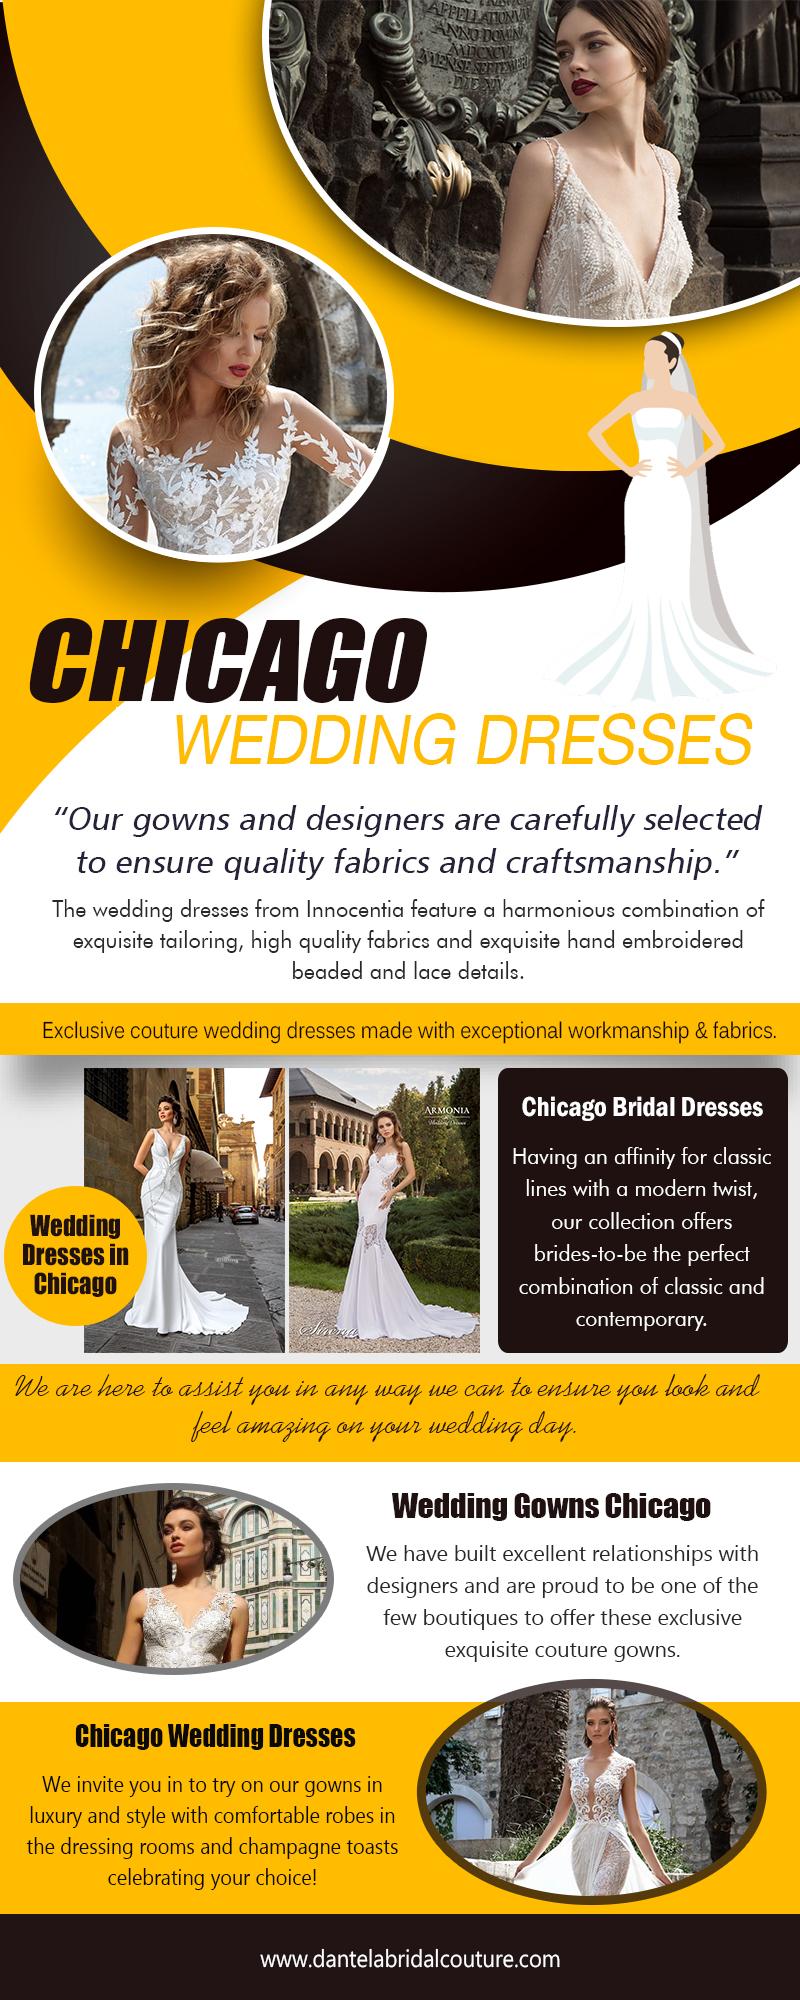 Chicago Wedding Dresses 2 | https://dantelabridalcouture.com